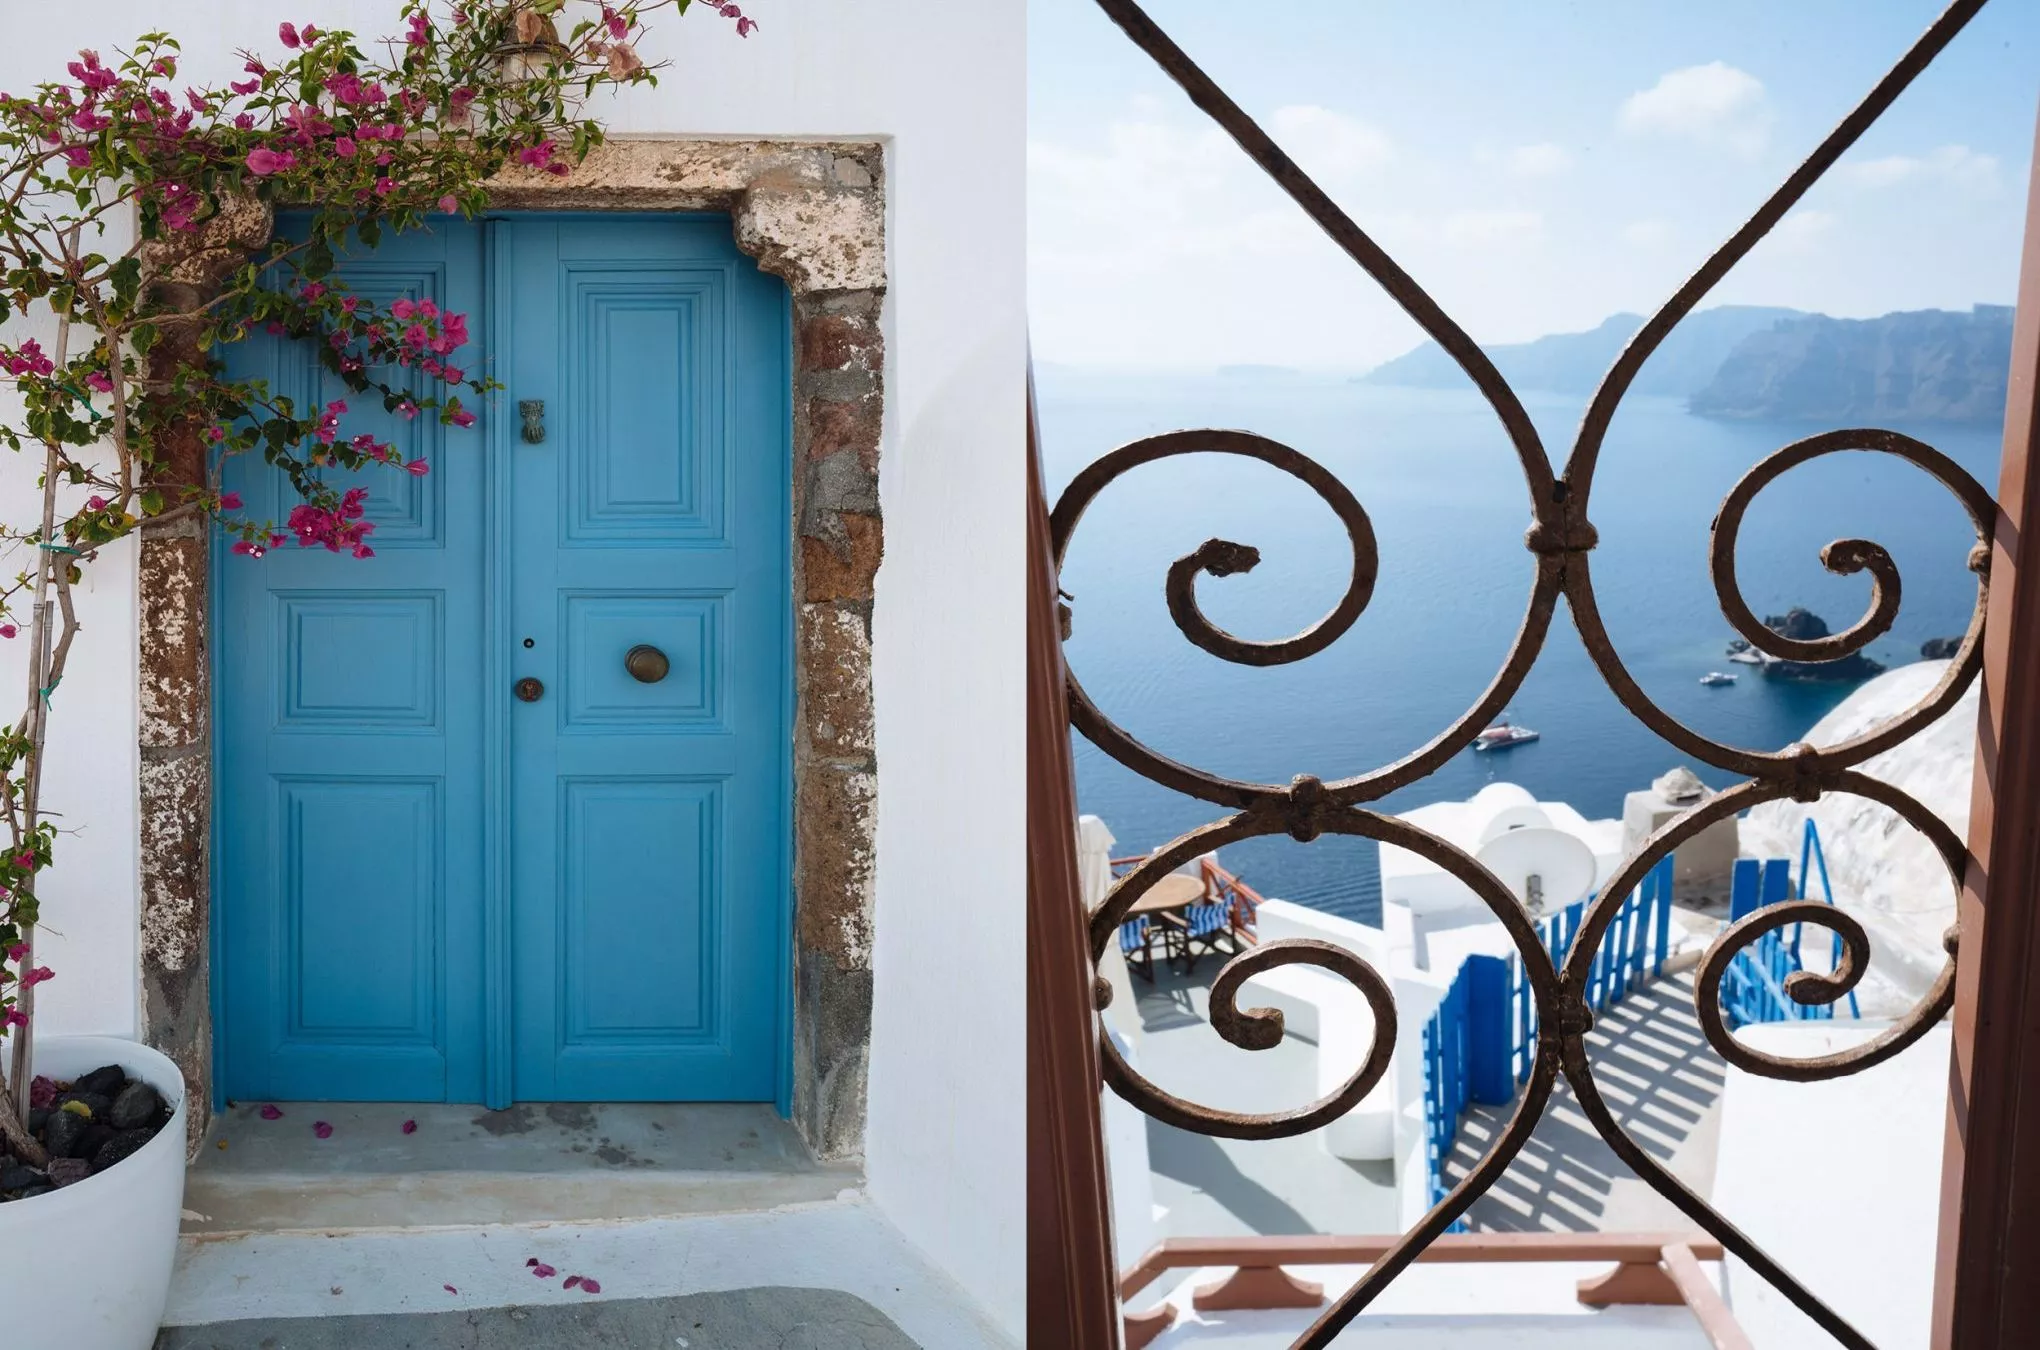 Die Farbwahl ist kein Zufall – der blau weiße Anstrich sollte damals die Zugehörigkeit zu Griechenland symbolisieren